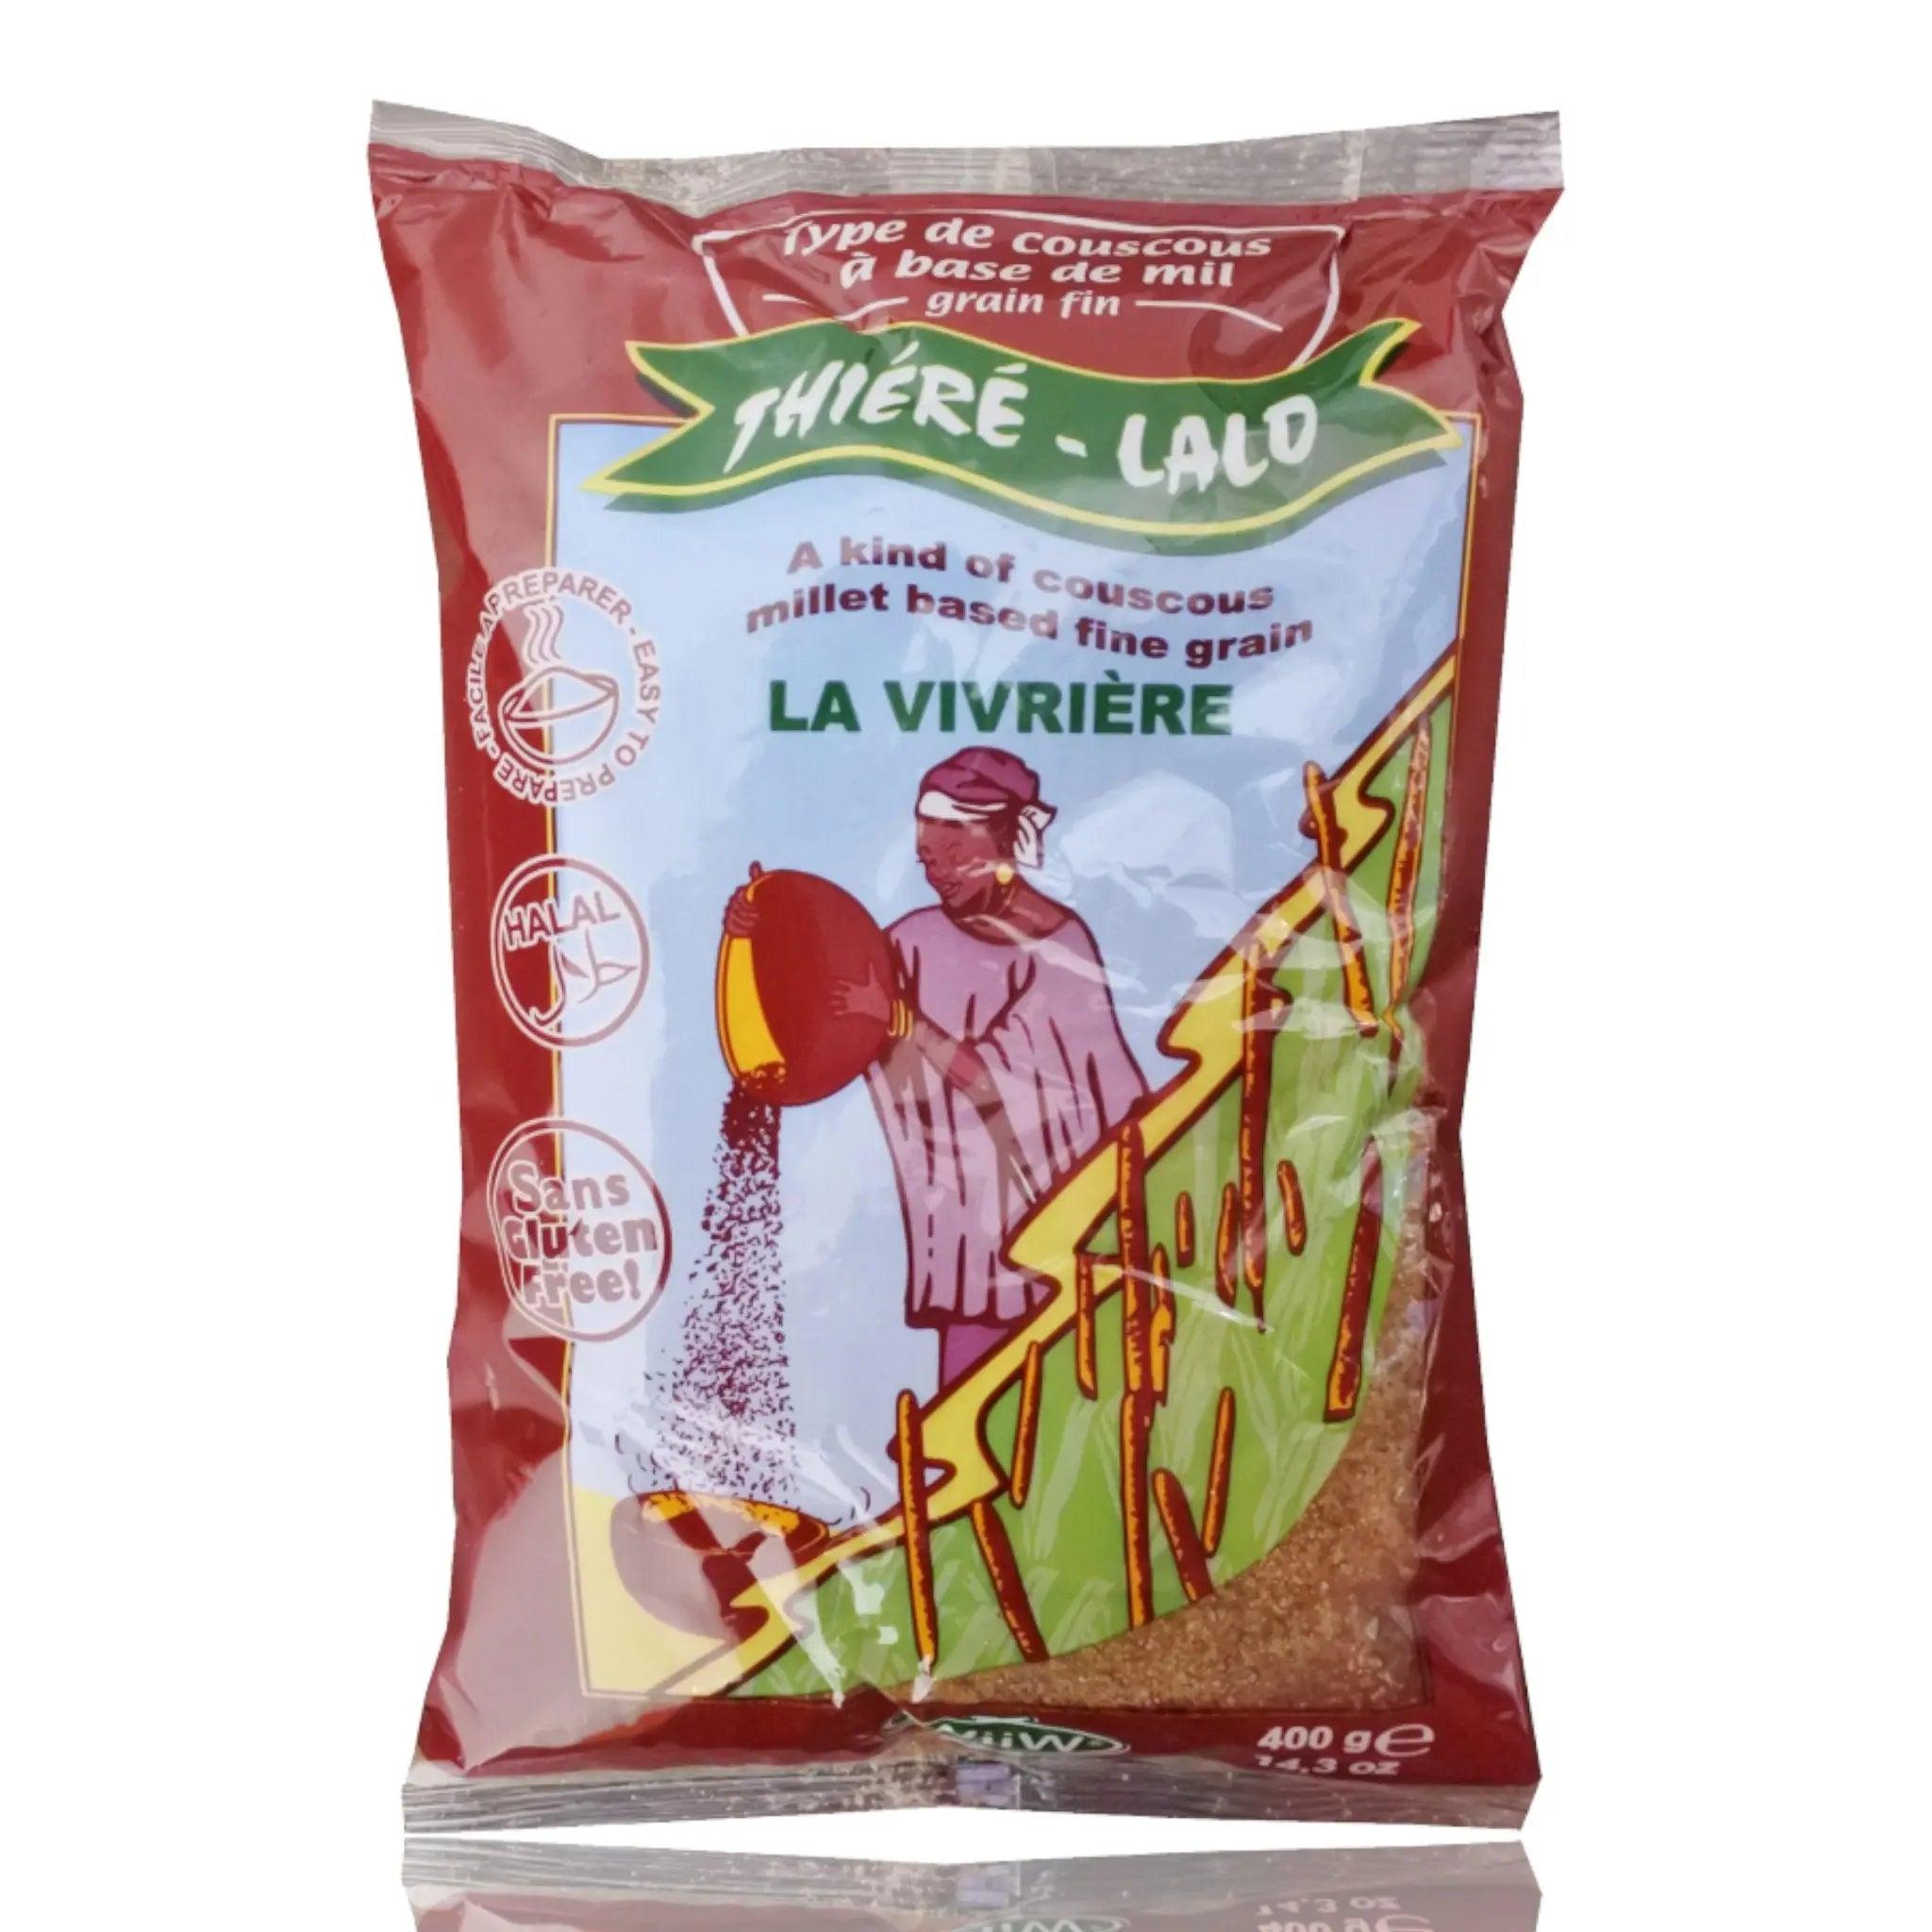 La Vivriere Thiere-Lalo Flour - Honesty Sales U.K